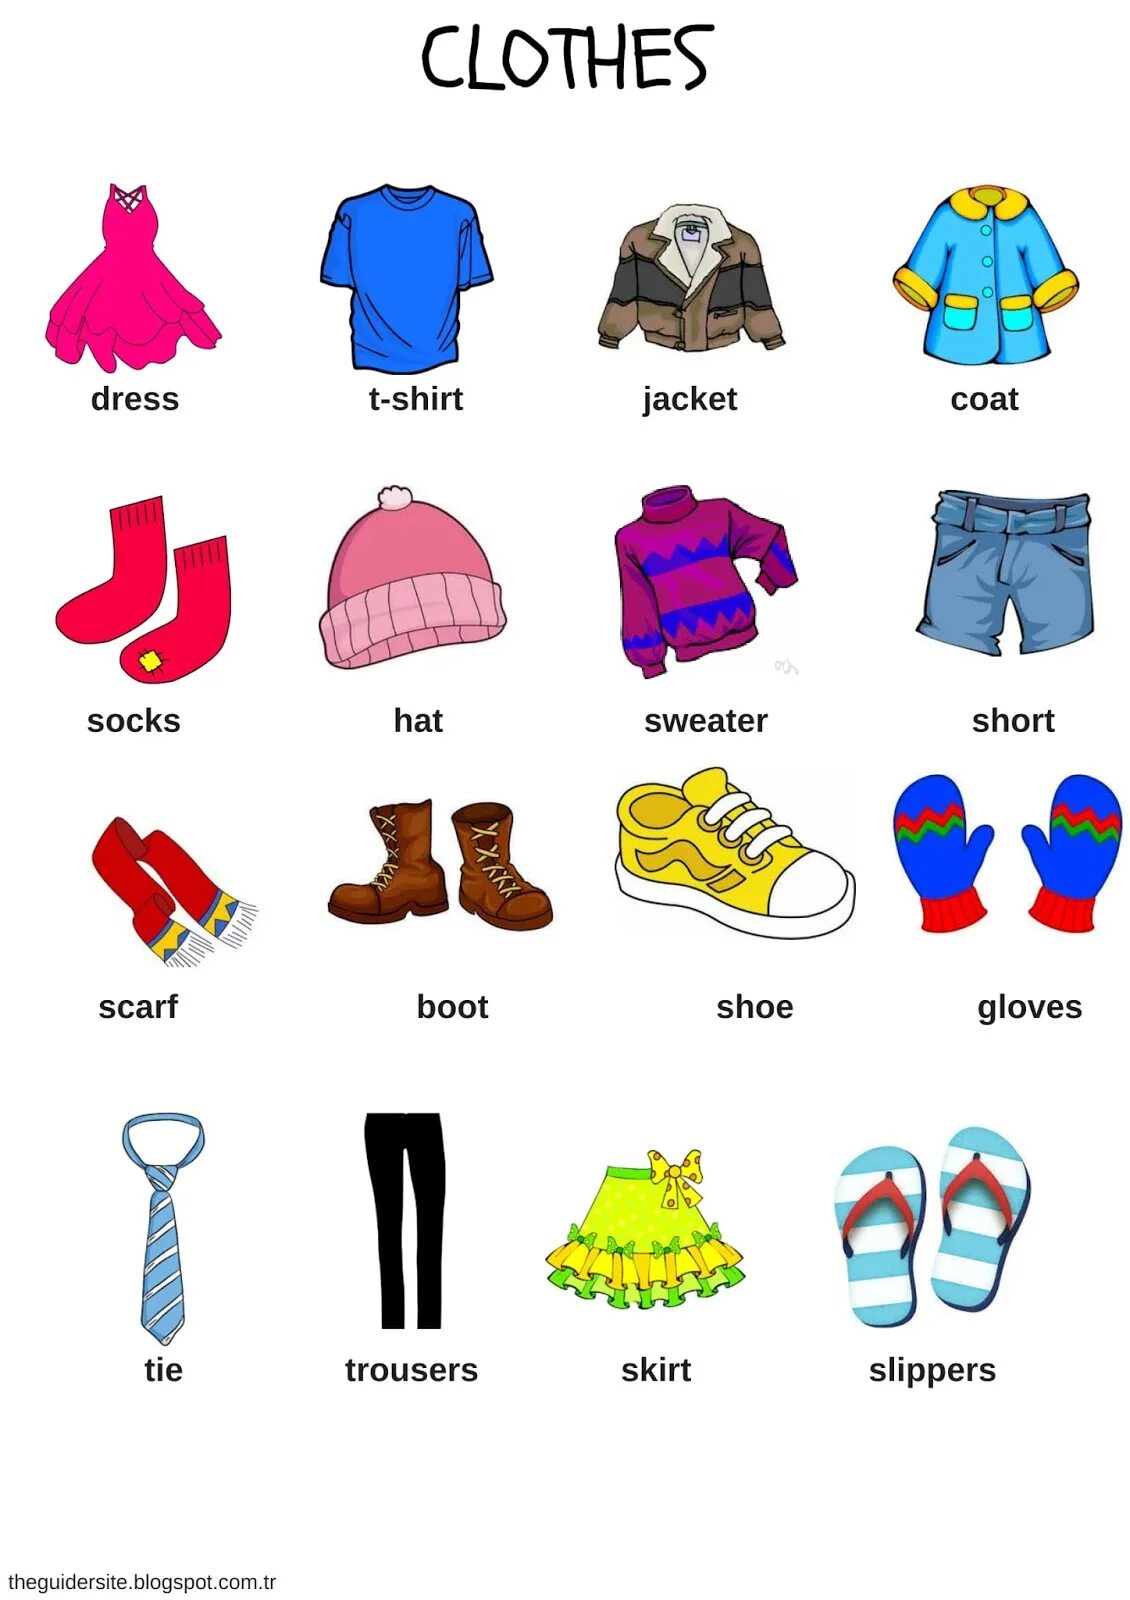 Какие предметы одежды. Одежда на английском. Одежда на английском для детей. Одежда английский язык для детей. Тема одежда на английском языке.